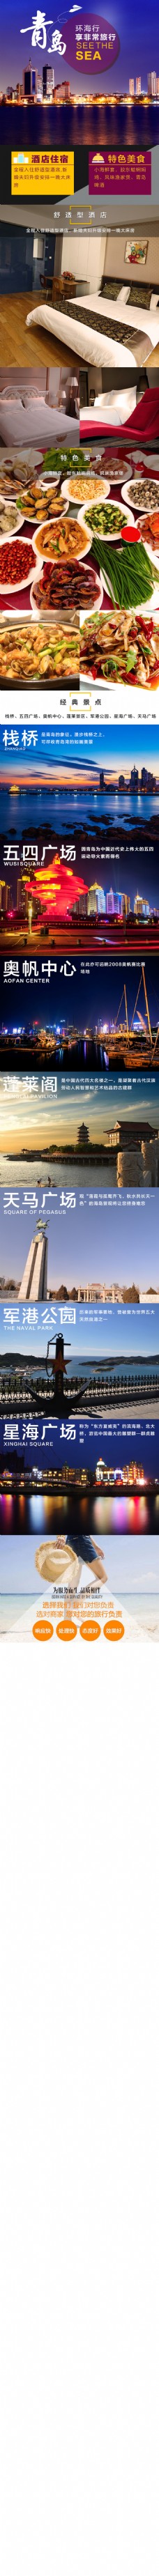 青岛旅游详情页